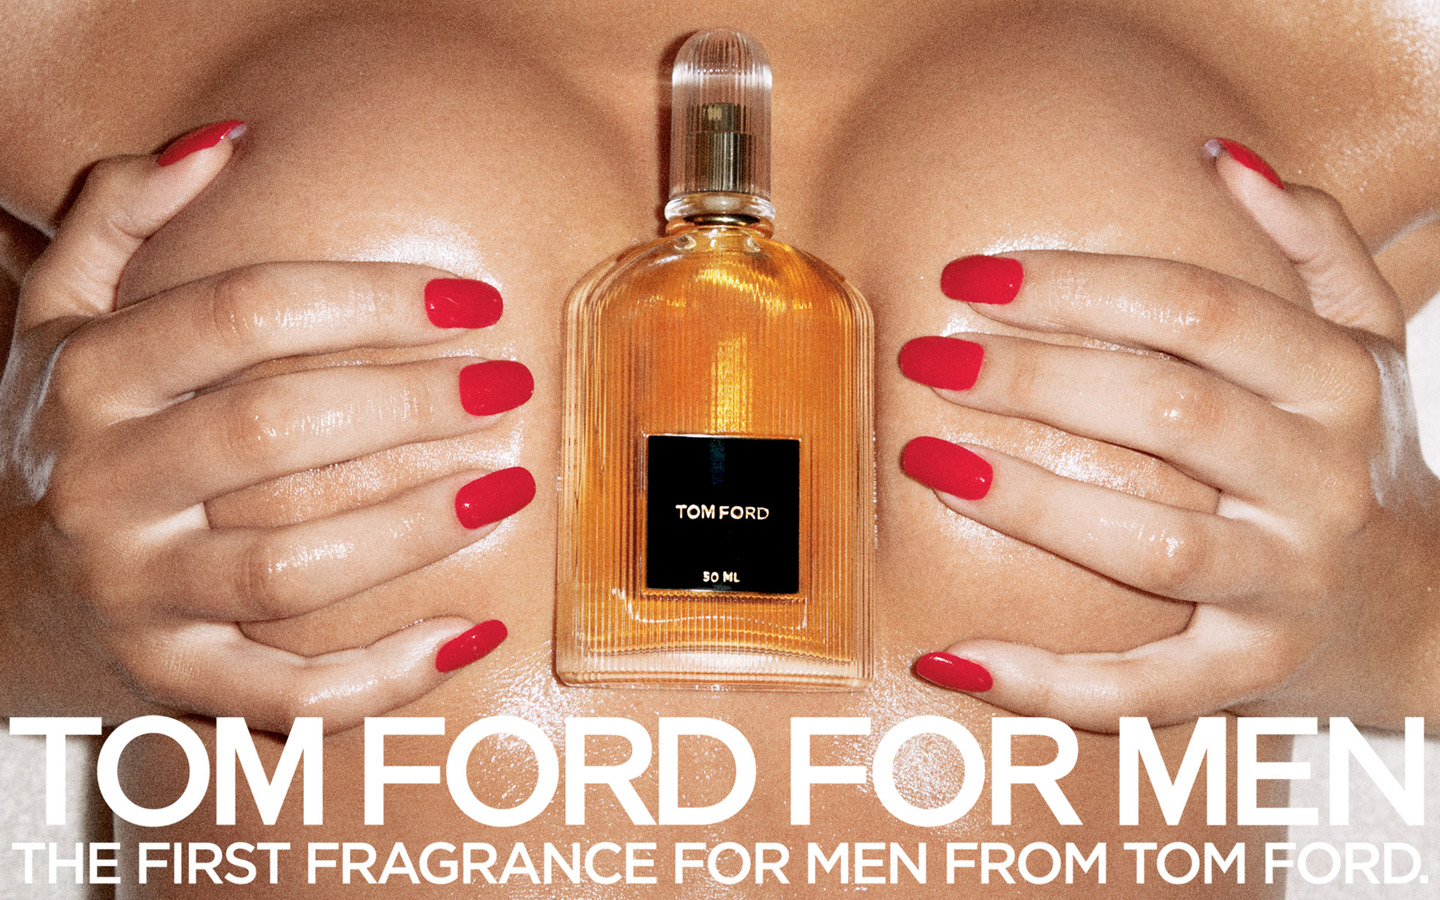 Tom Ford for Men Tom Ford for men ads commercial poster erotik.jpg